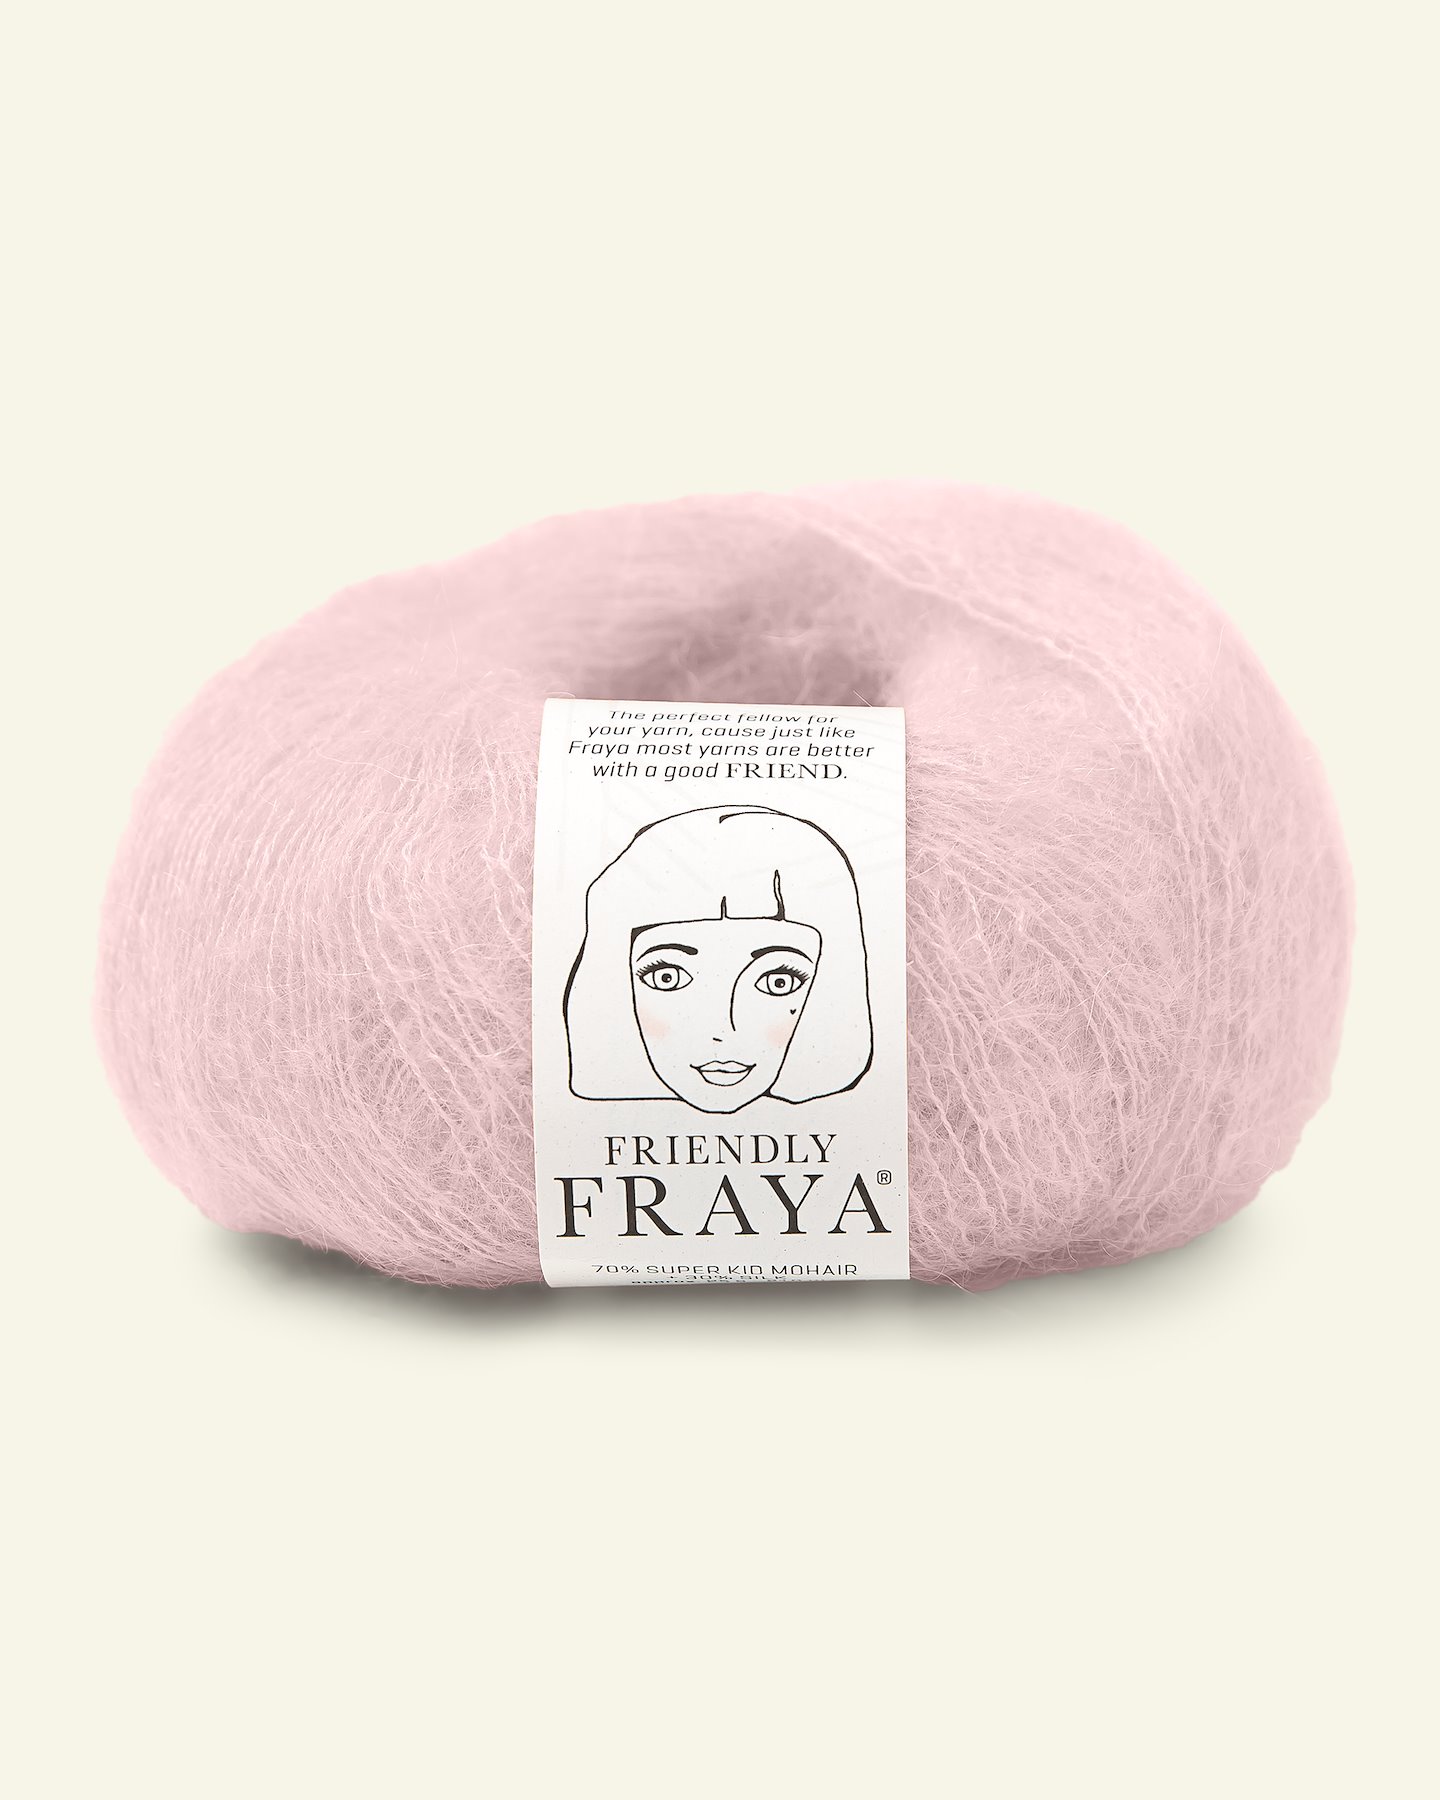 FRAYA, silk mohair yarn "Friendly", powder 90000913_pack